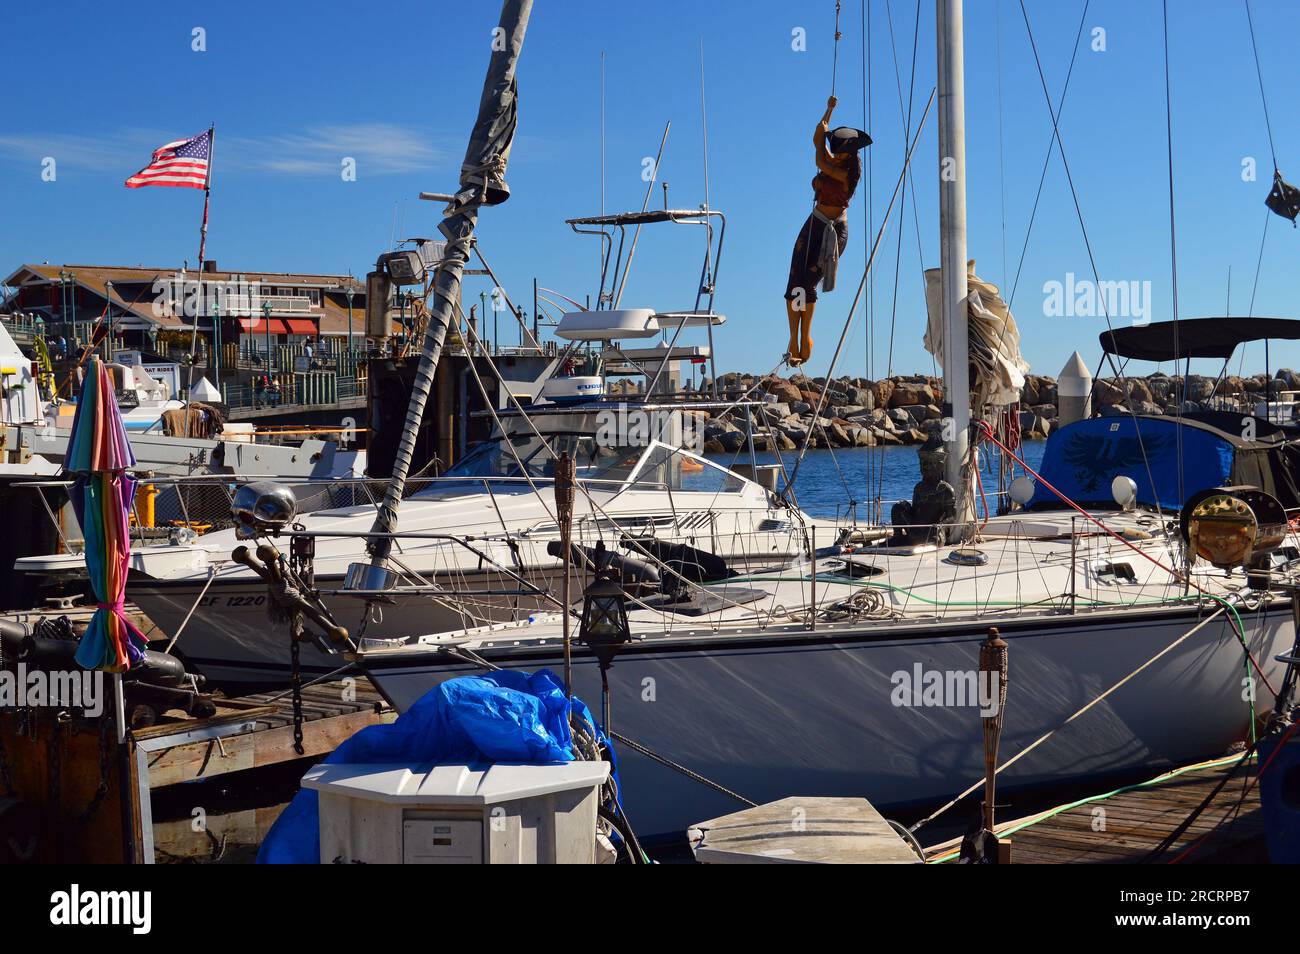 Am Mast eines Segelboots hängt eine Skulptur einer Piratenfrau in einem Yachthafen nahe Redondo Beach, Kalifornien Stockfoto